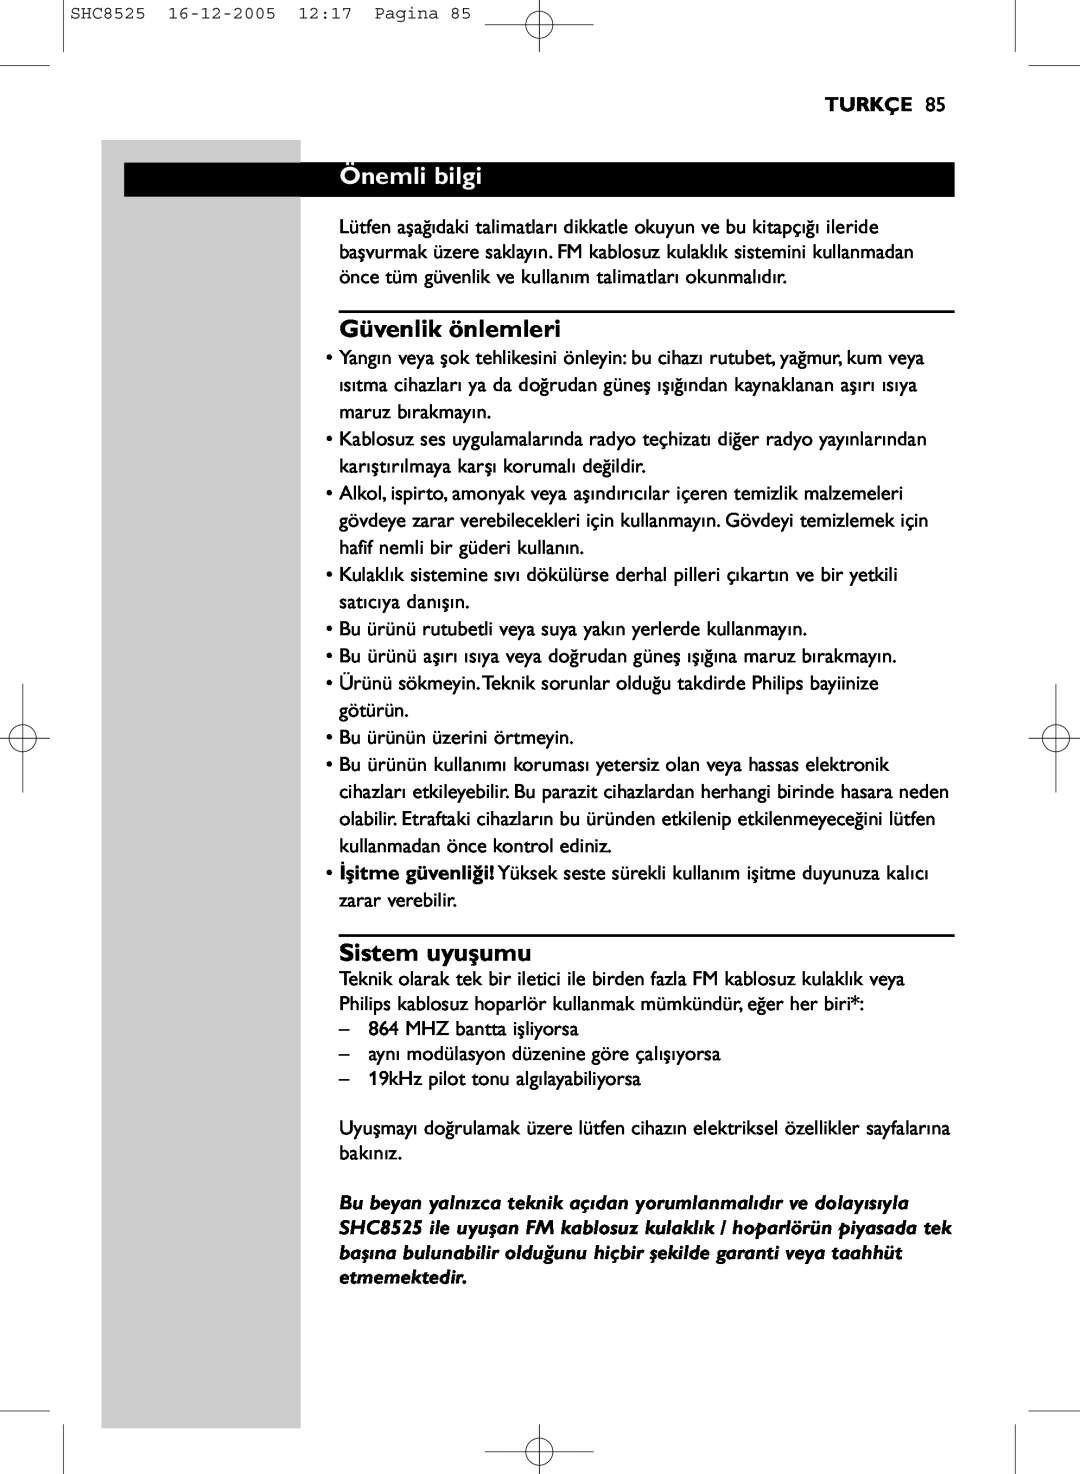 Event electronic SHC8525 manual Önemli bilgi, Güvenlik önlemleri, Sistem uyuşumu, Turkçe 